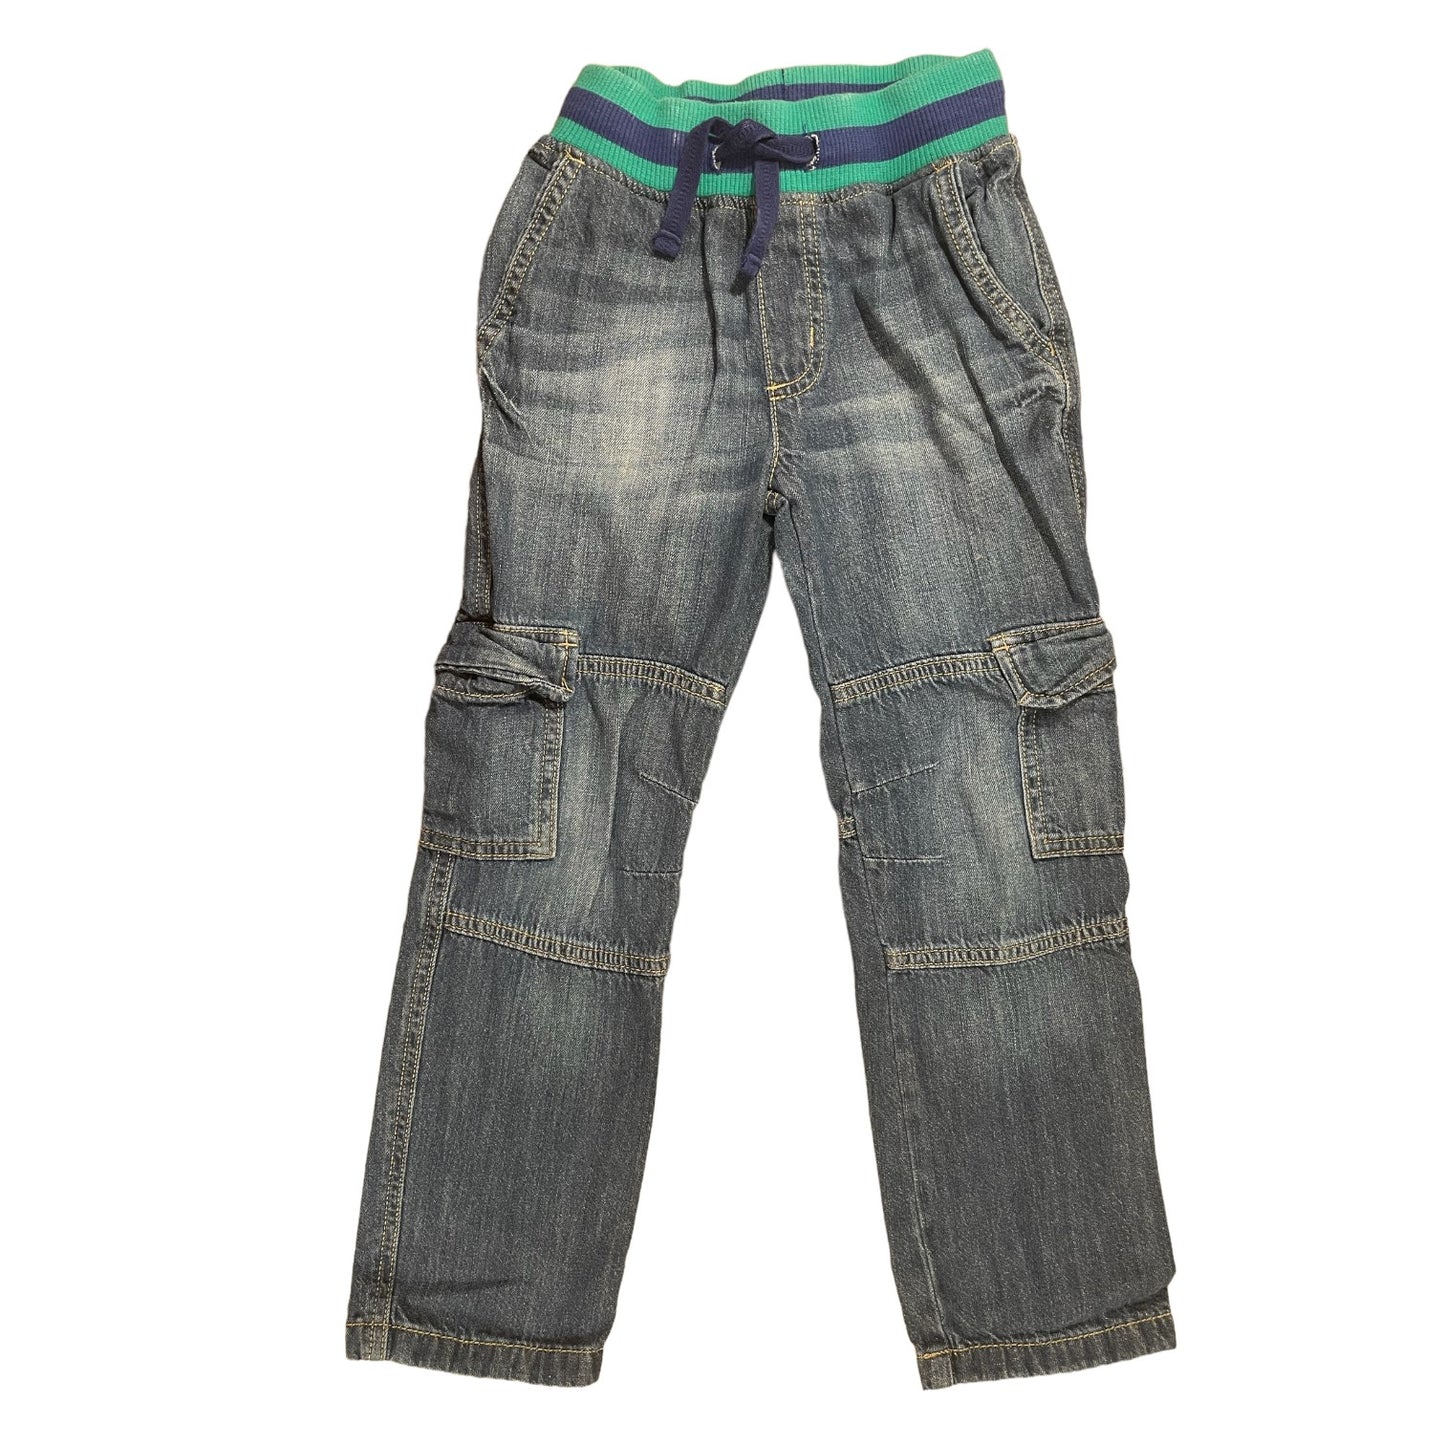 Gymboree Soft Waist Boys Jeans Size 6